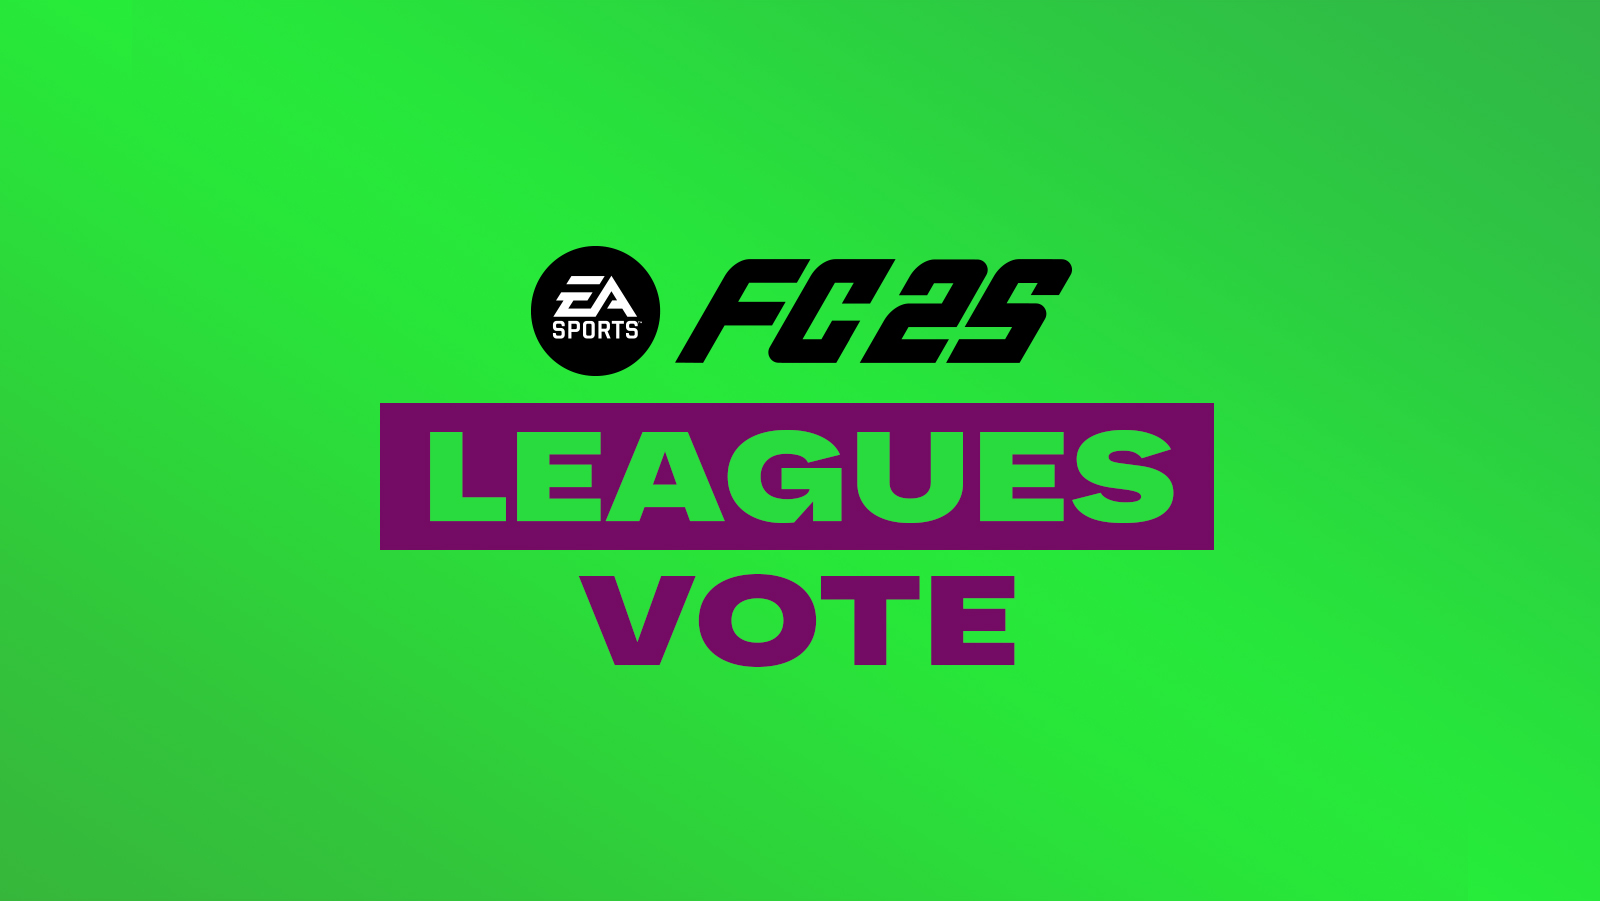 FC 25 Leagues Vote